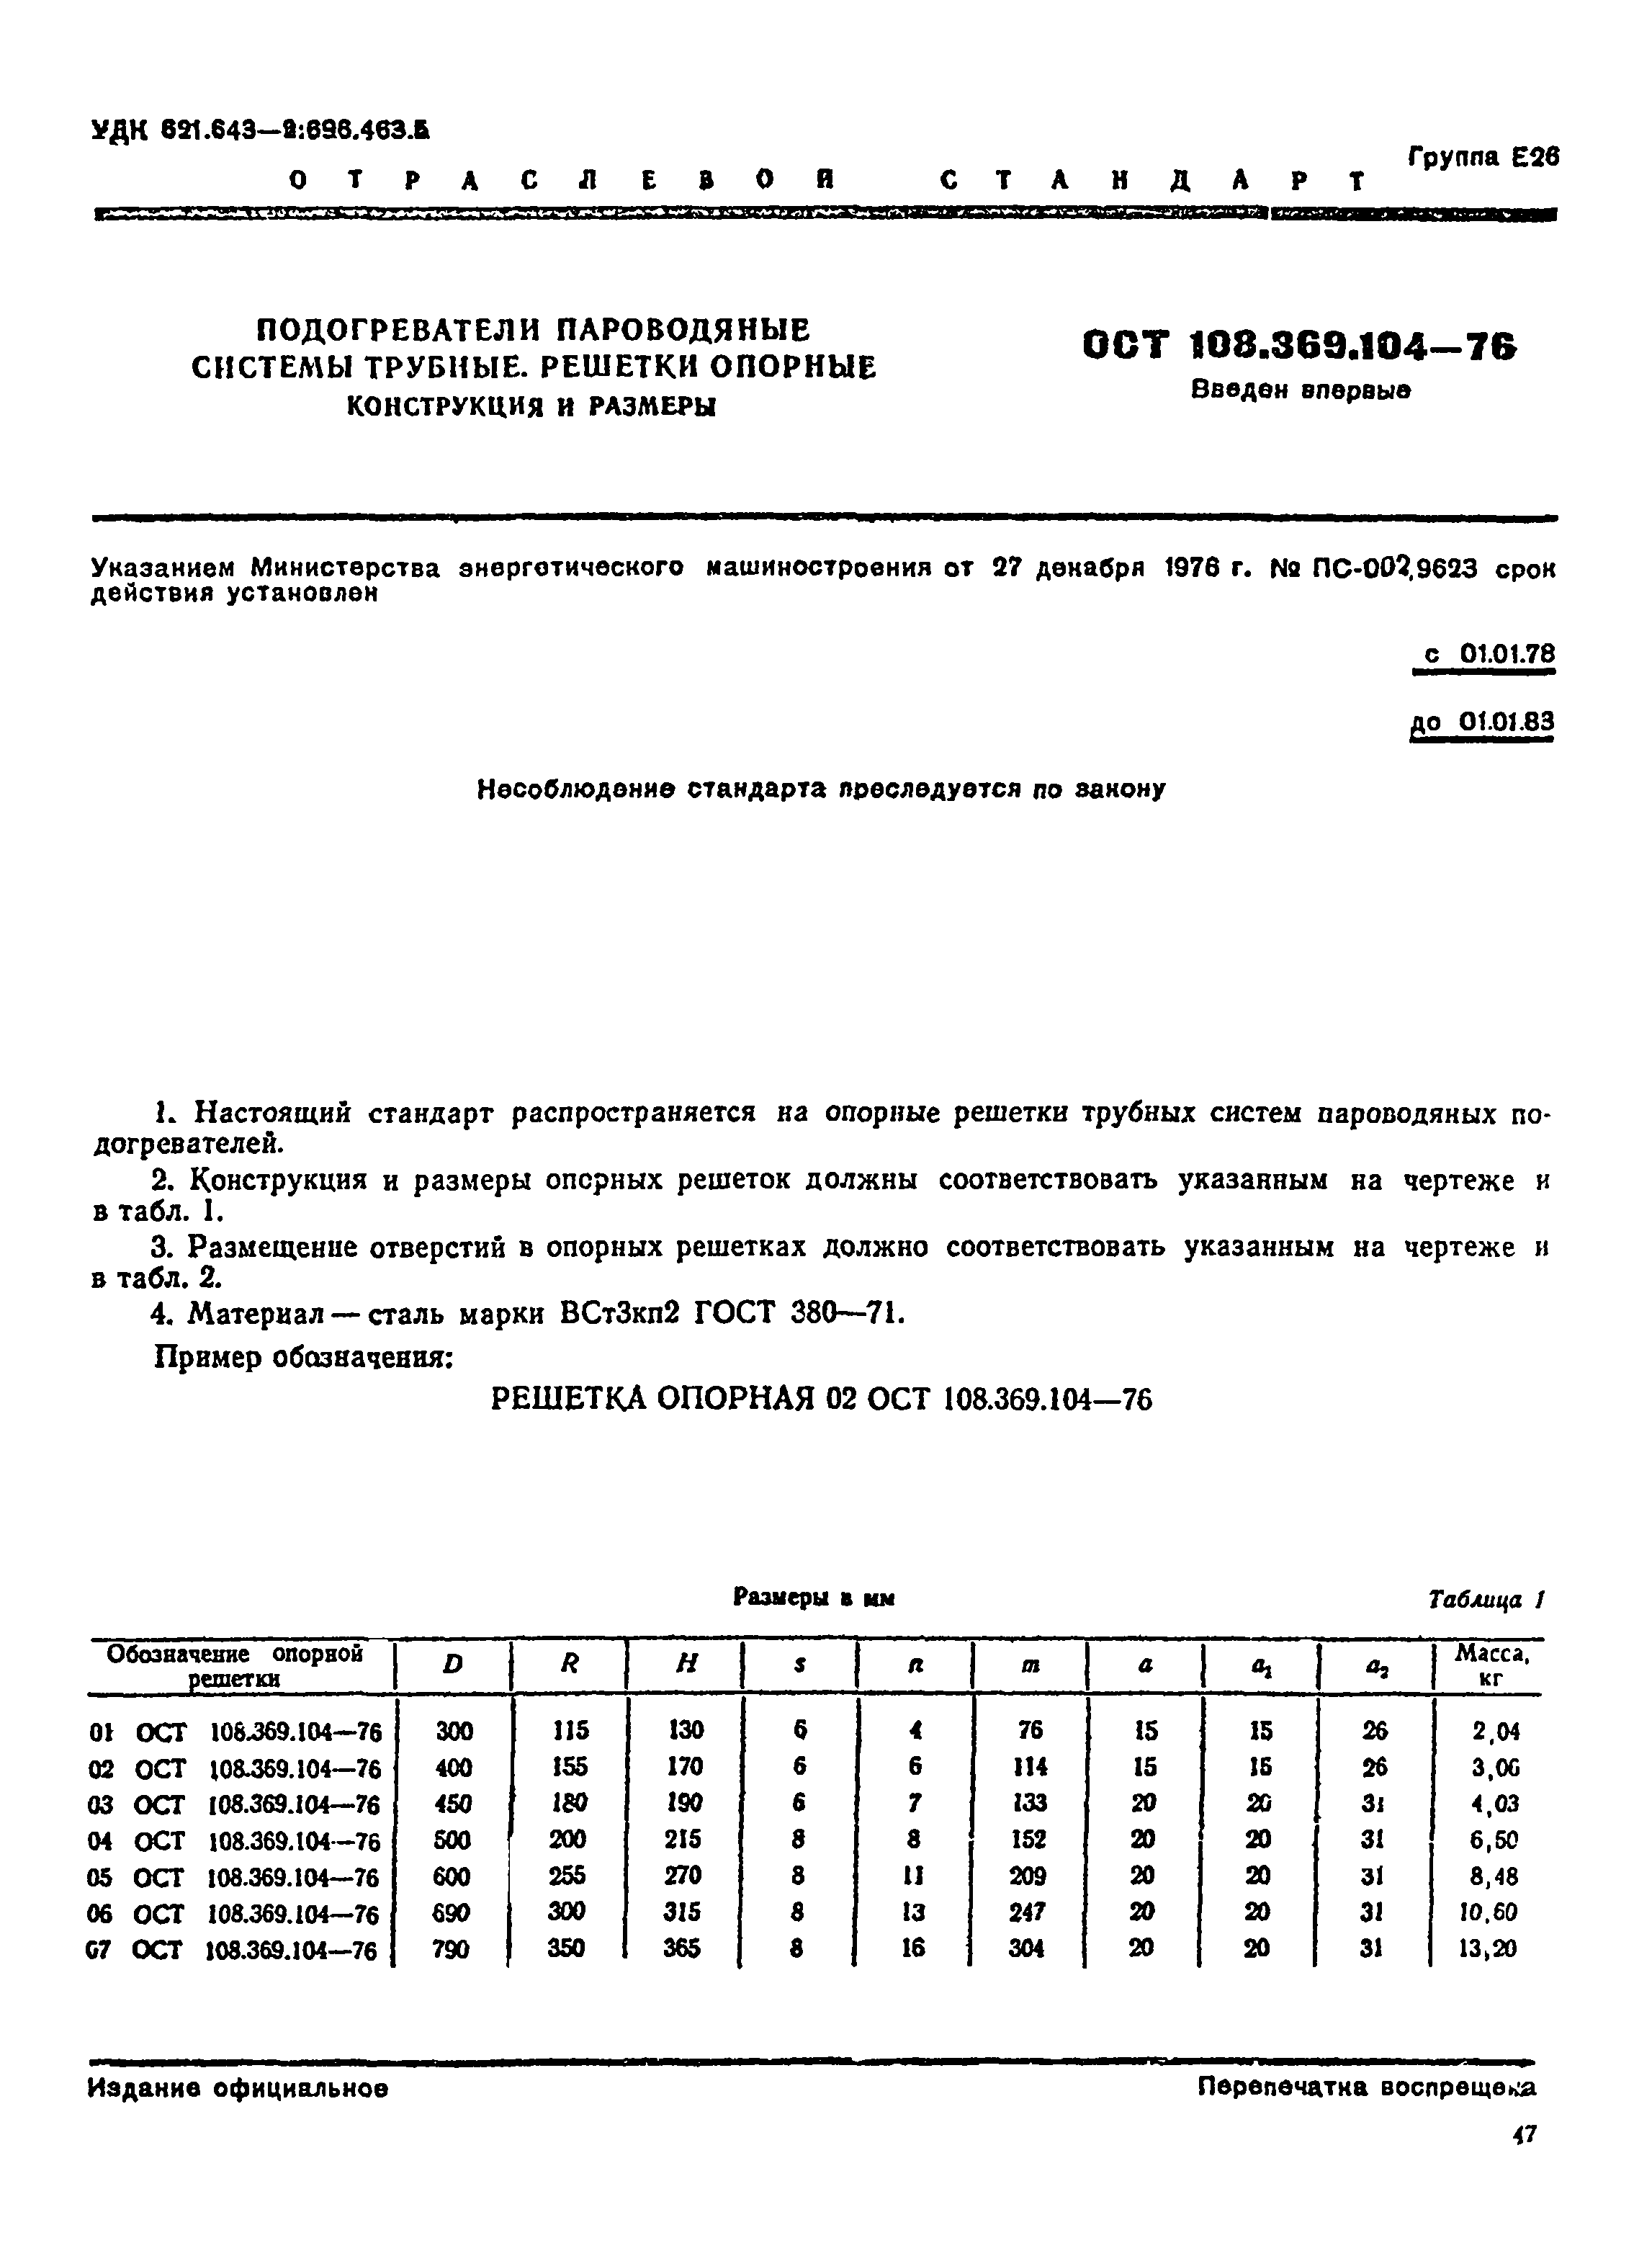 ОСТ 108.369.104-76